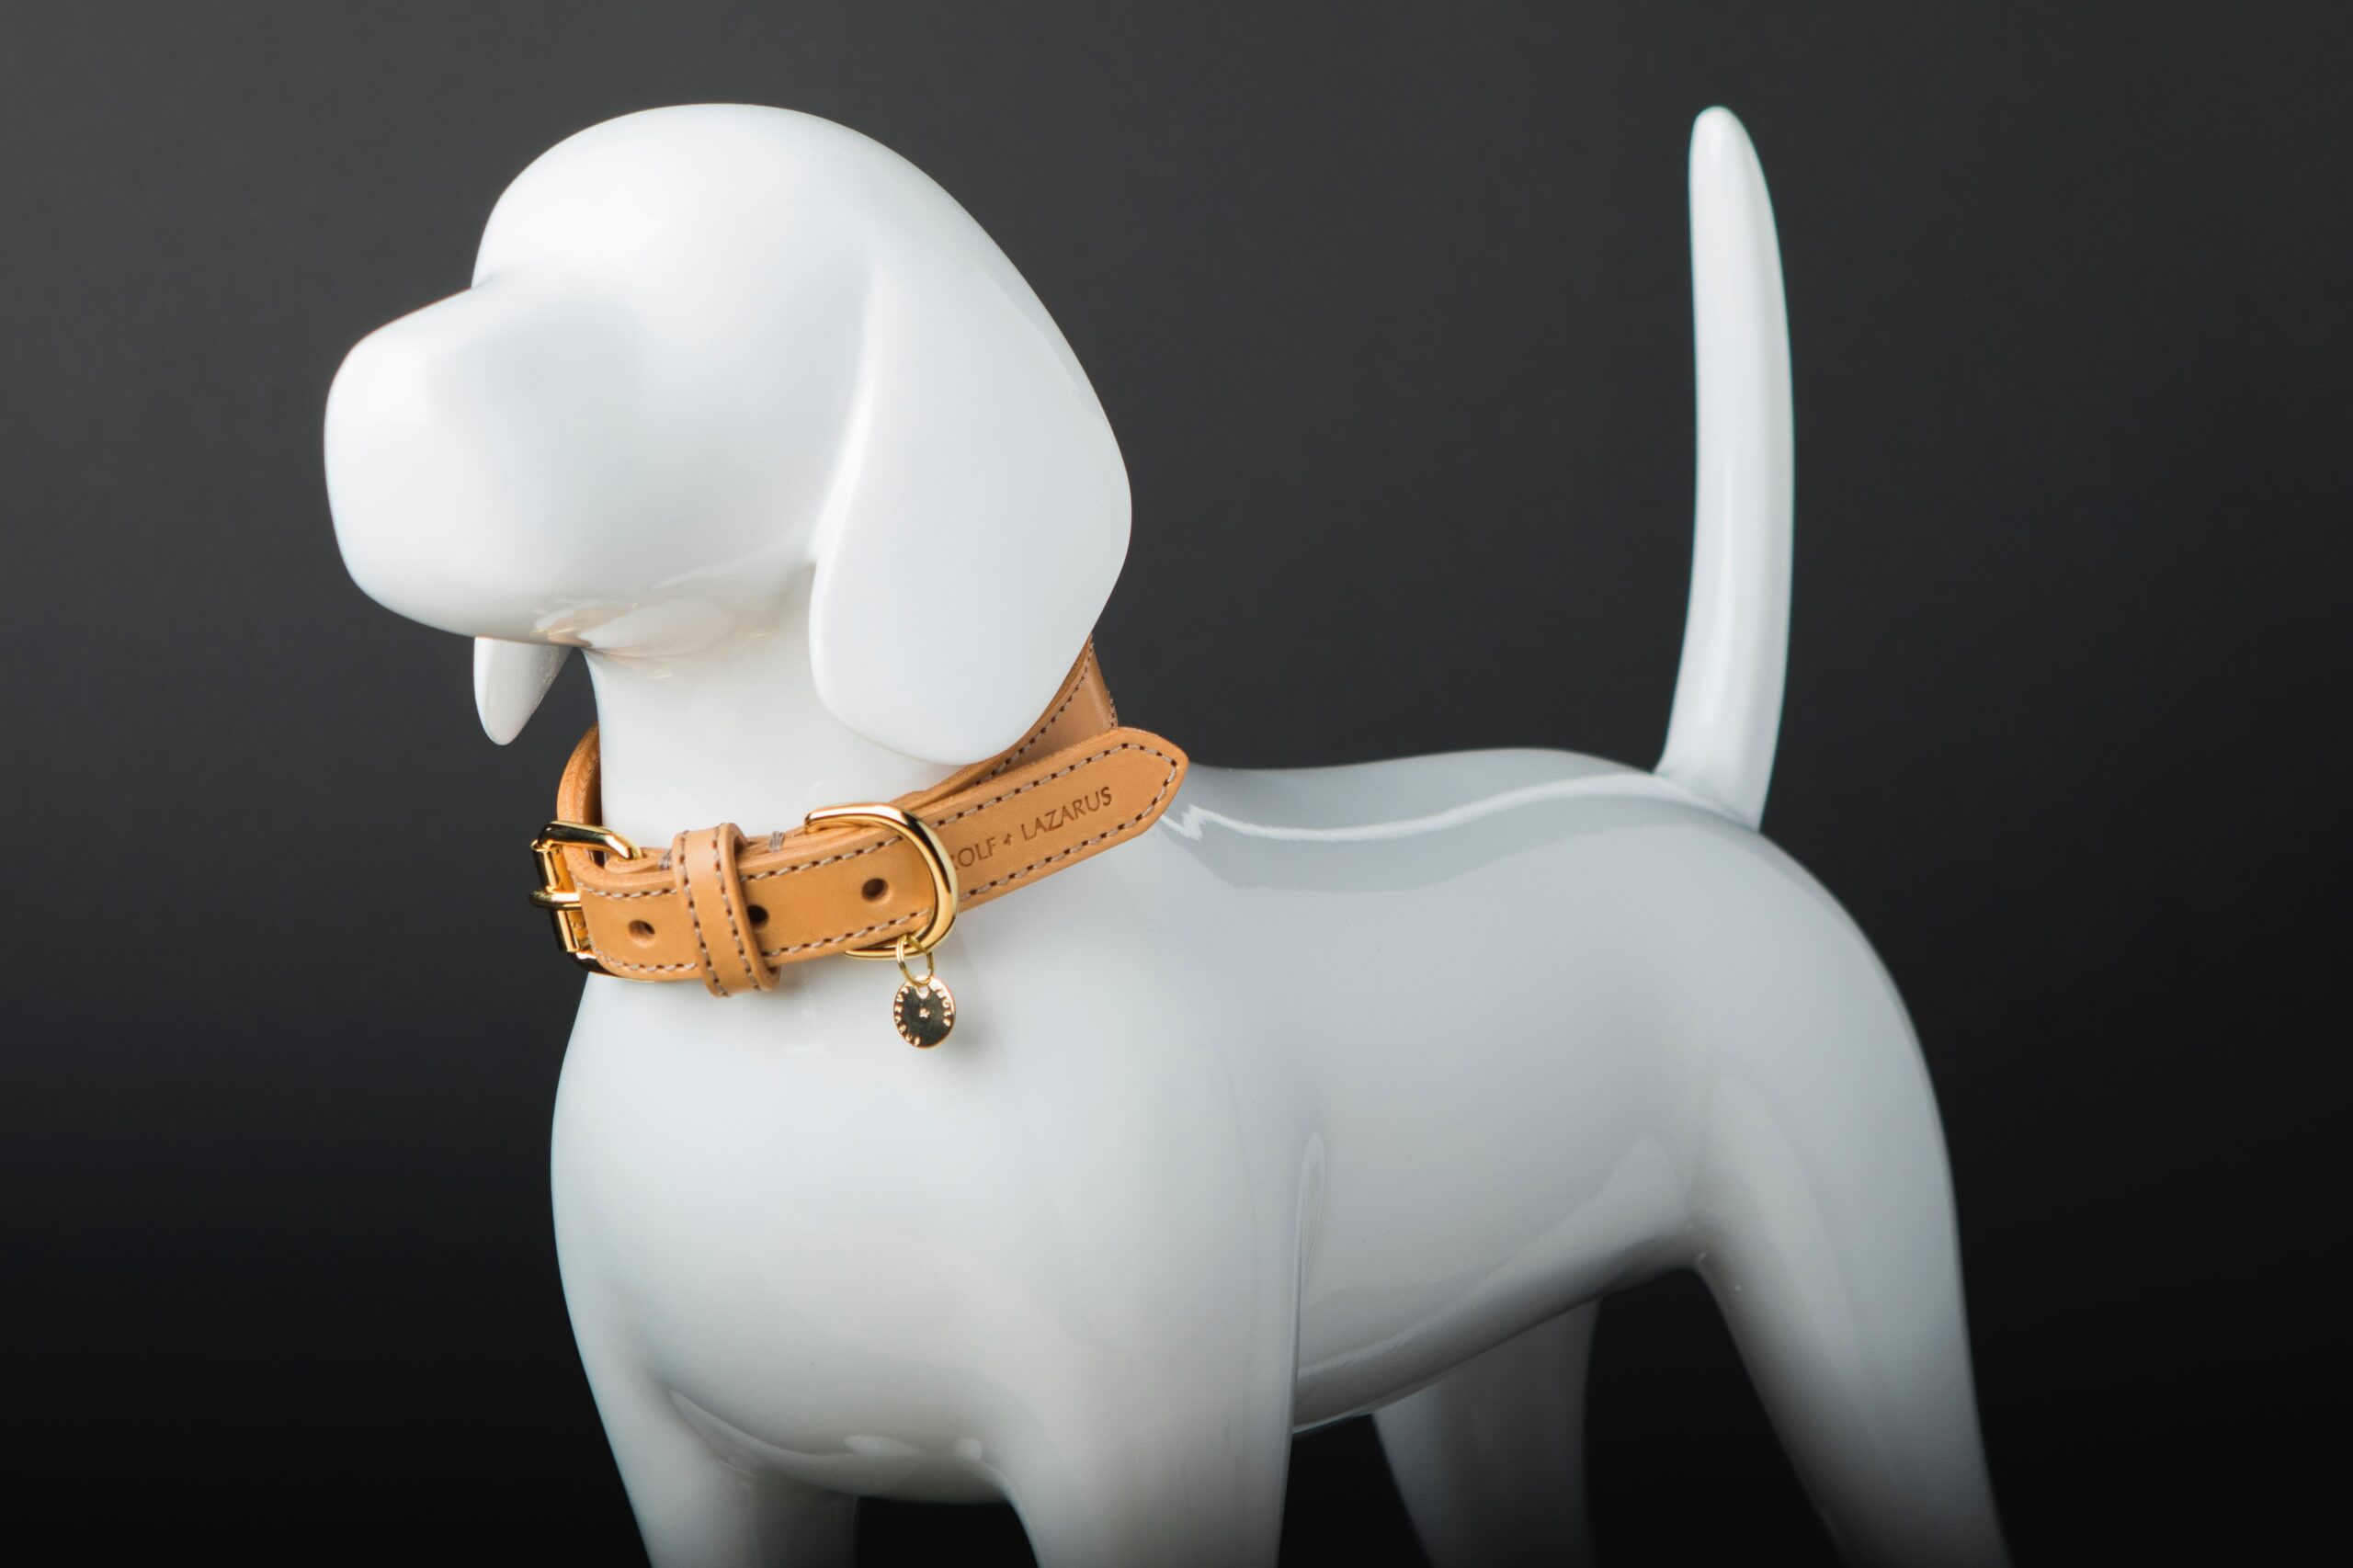 Dog collar on a dog statue